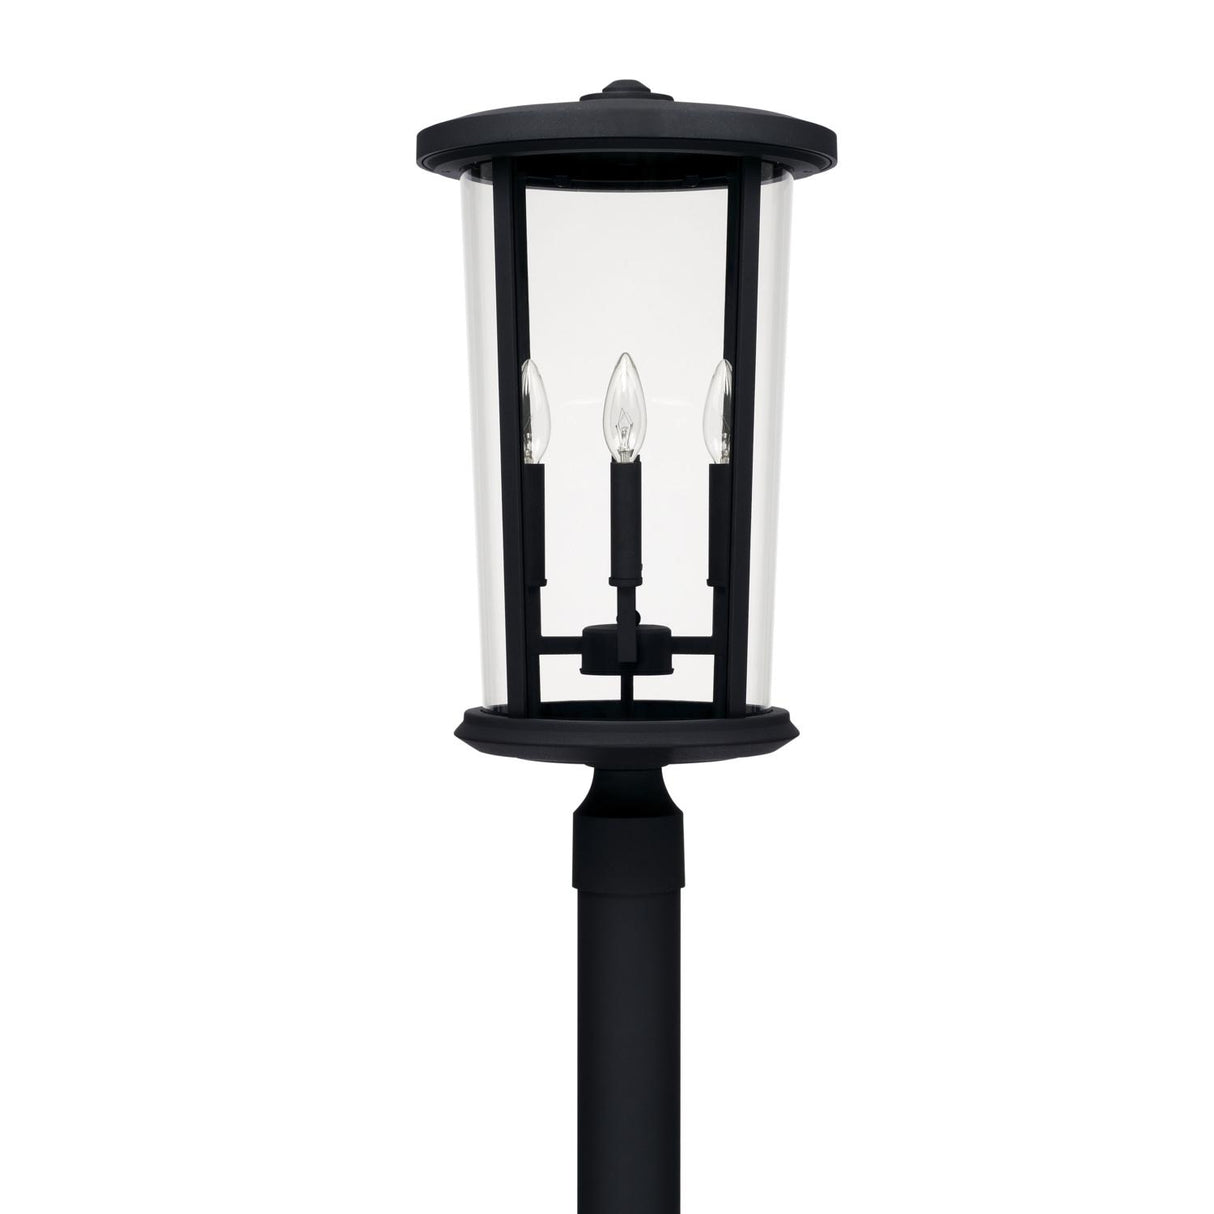 Capital Lighting 926743BK Howell 4 Light Outdoor Post Lantern Black